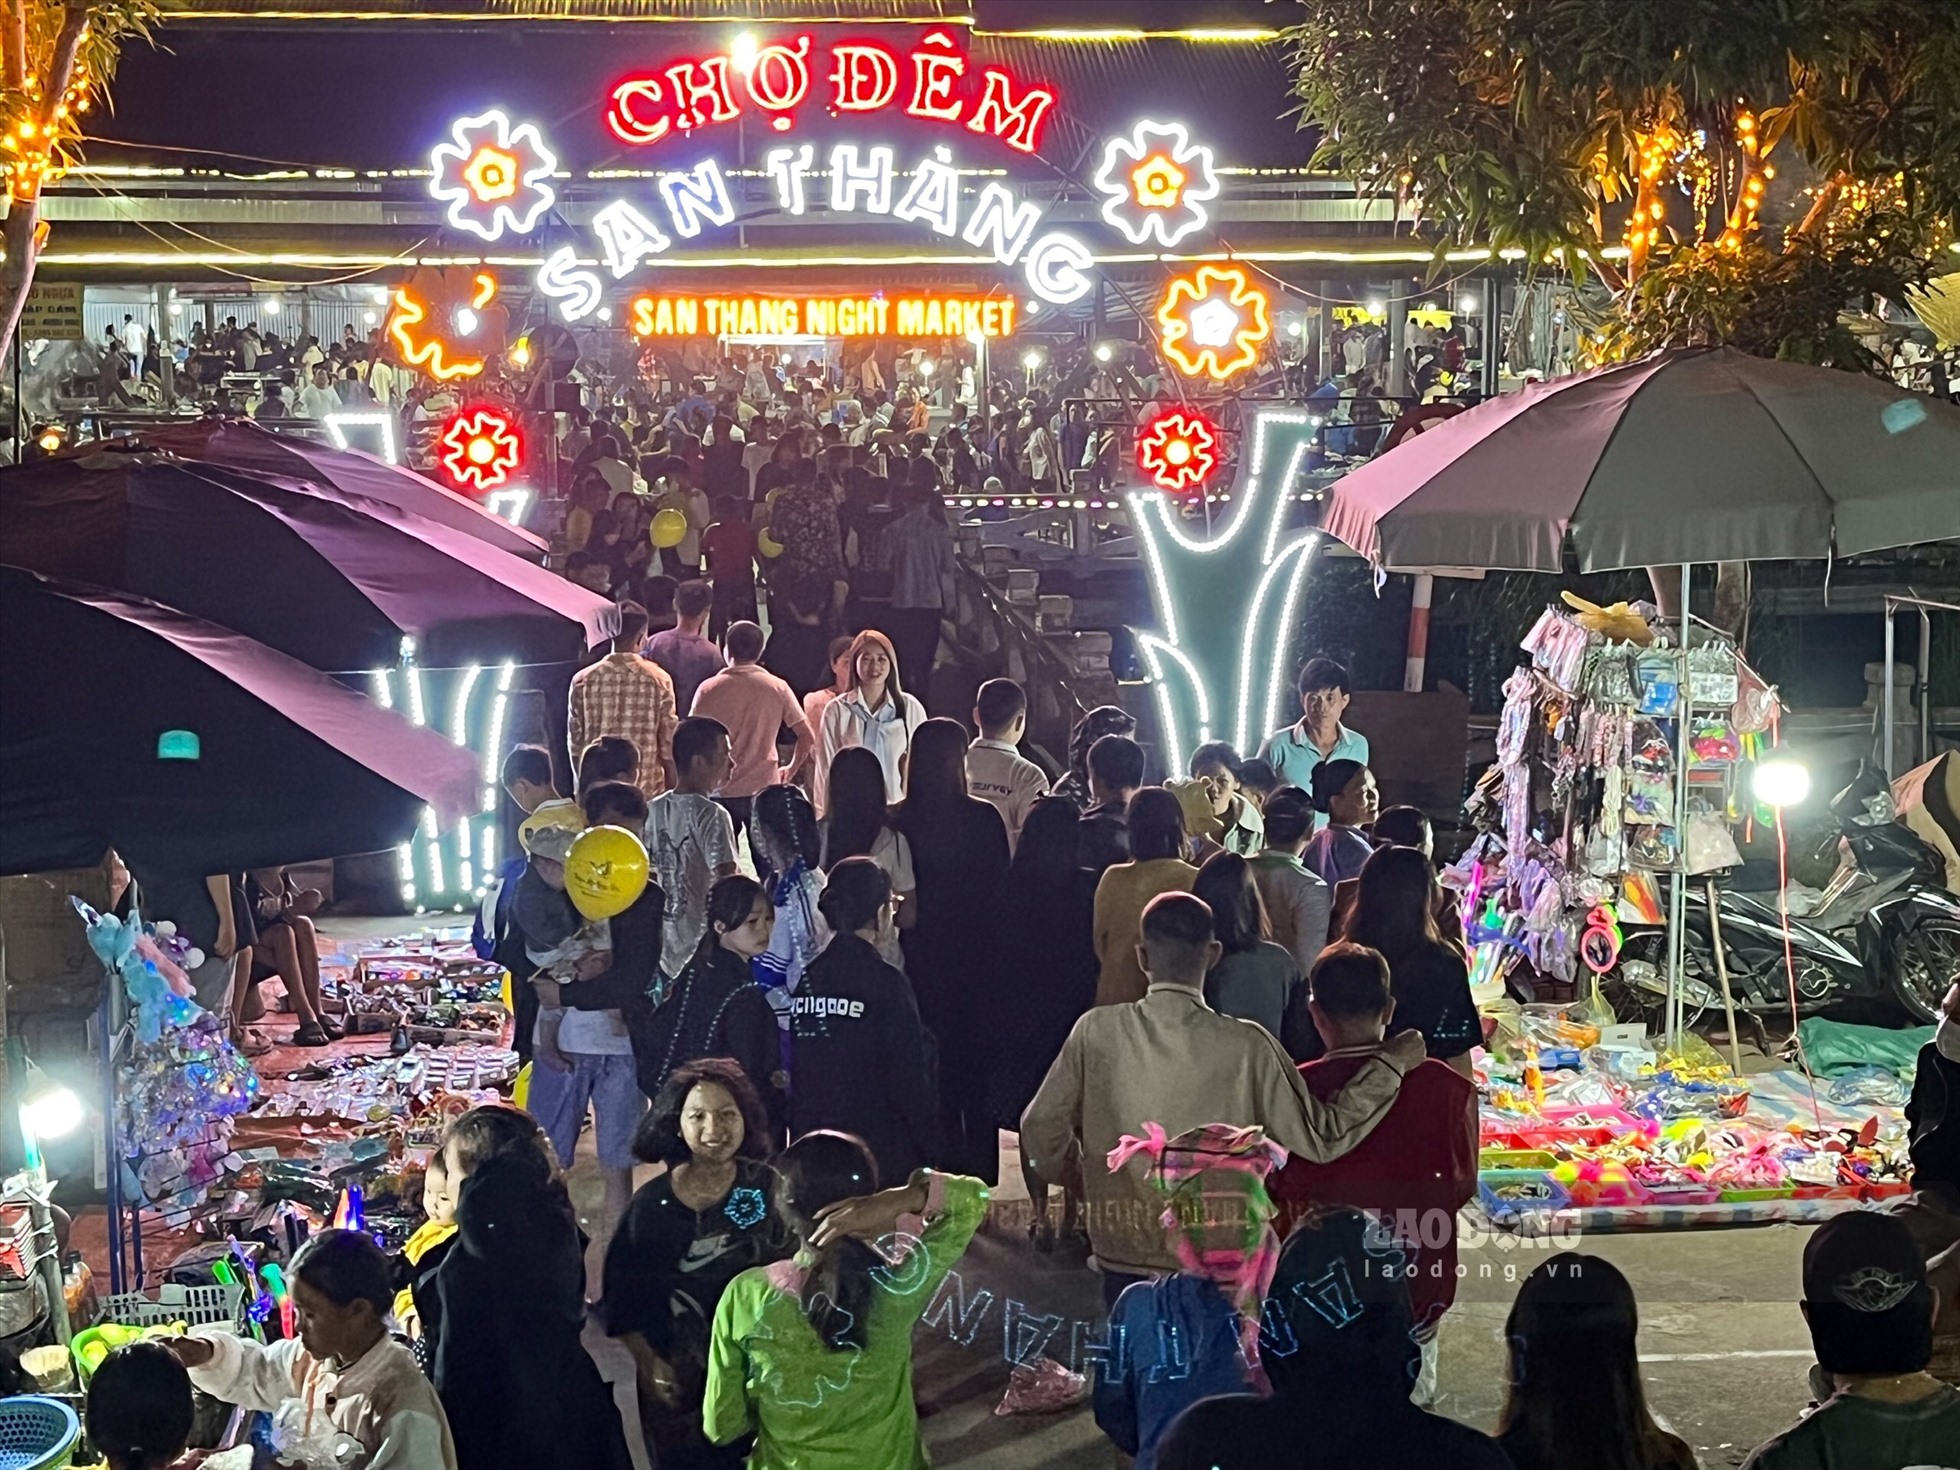 Chợ đêm San Thàng thuộc xã San Thàng, TP. Lai Châu mở vào tối thứ 7 hàng tuần là một trong những nét đẹp văn hóa của Lai Châu. Đồng thời, cũng là điểm nhấn thu hút du khách đến nơi đây tham quan.